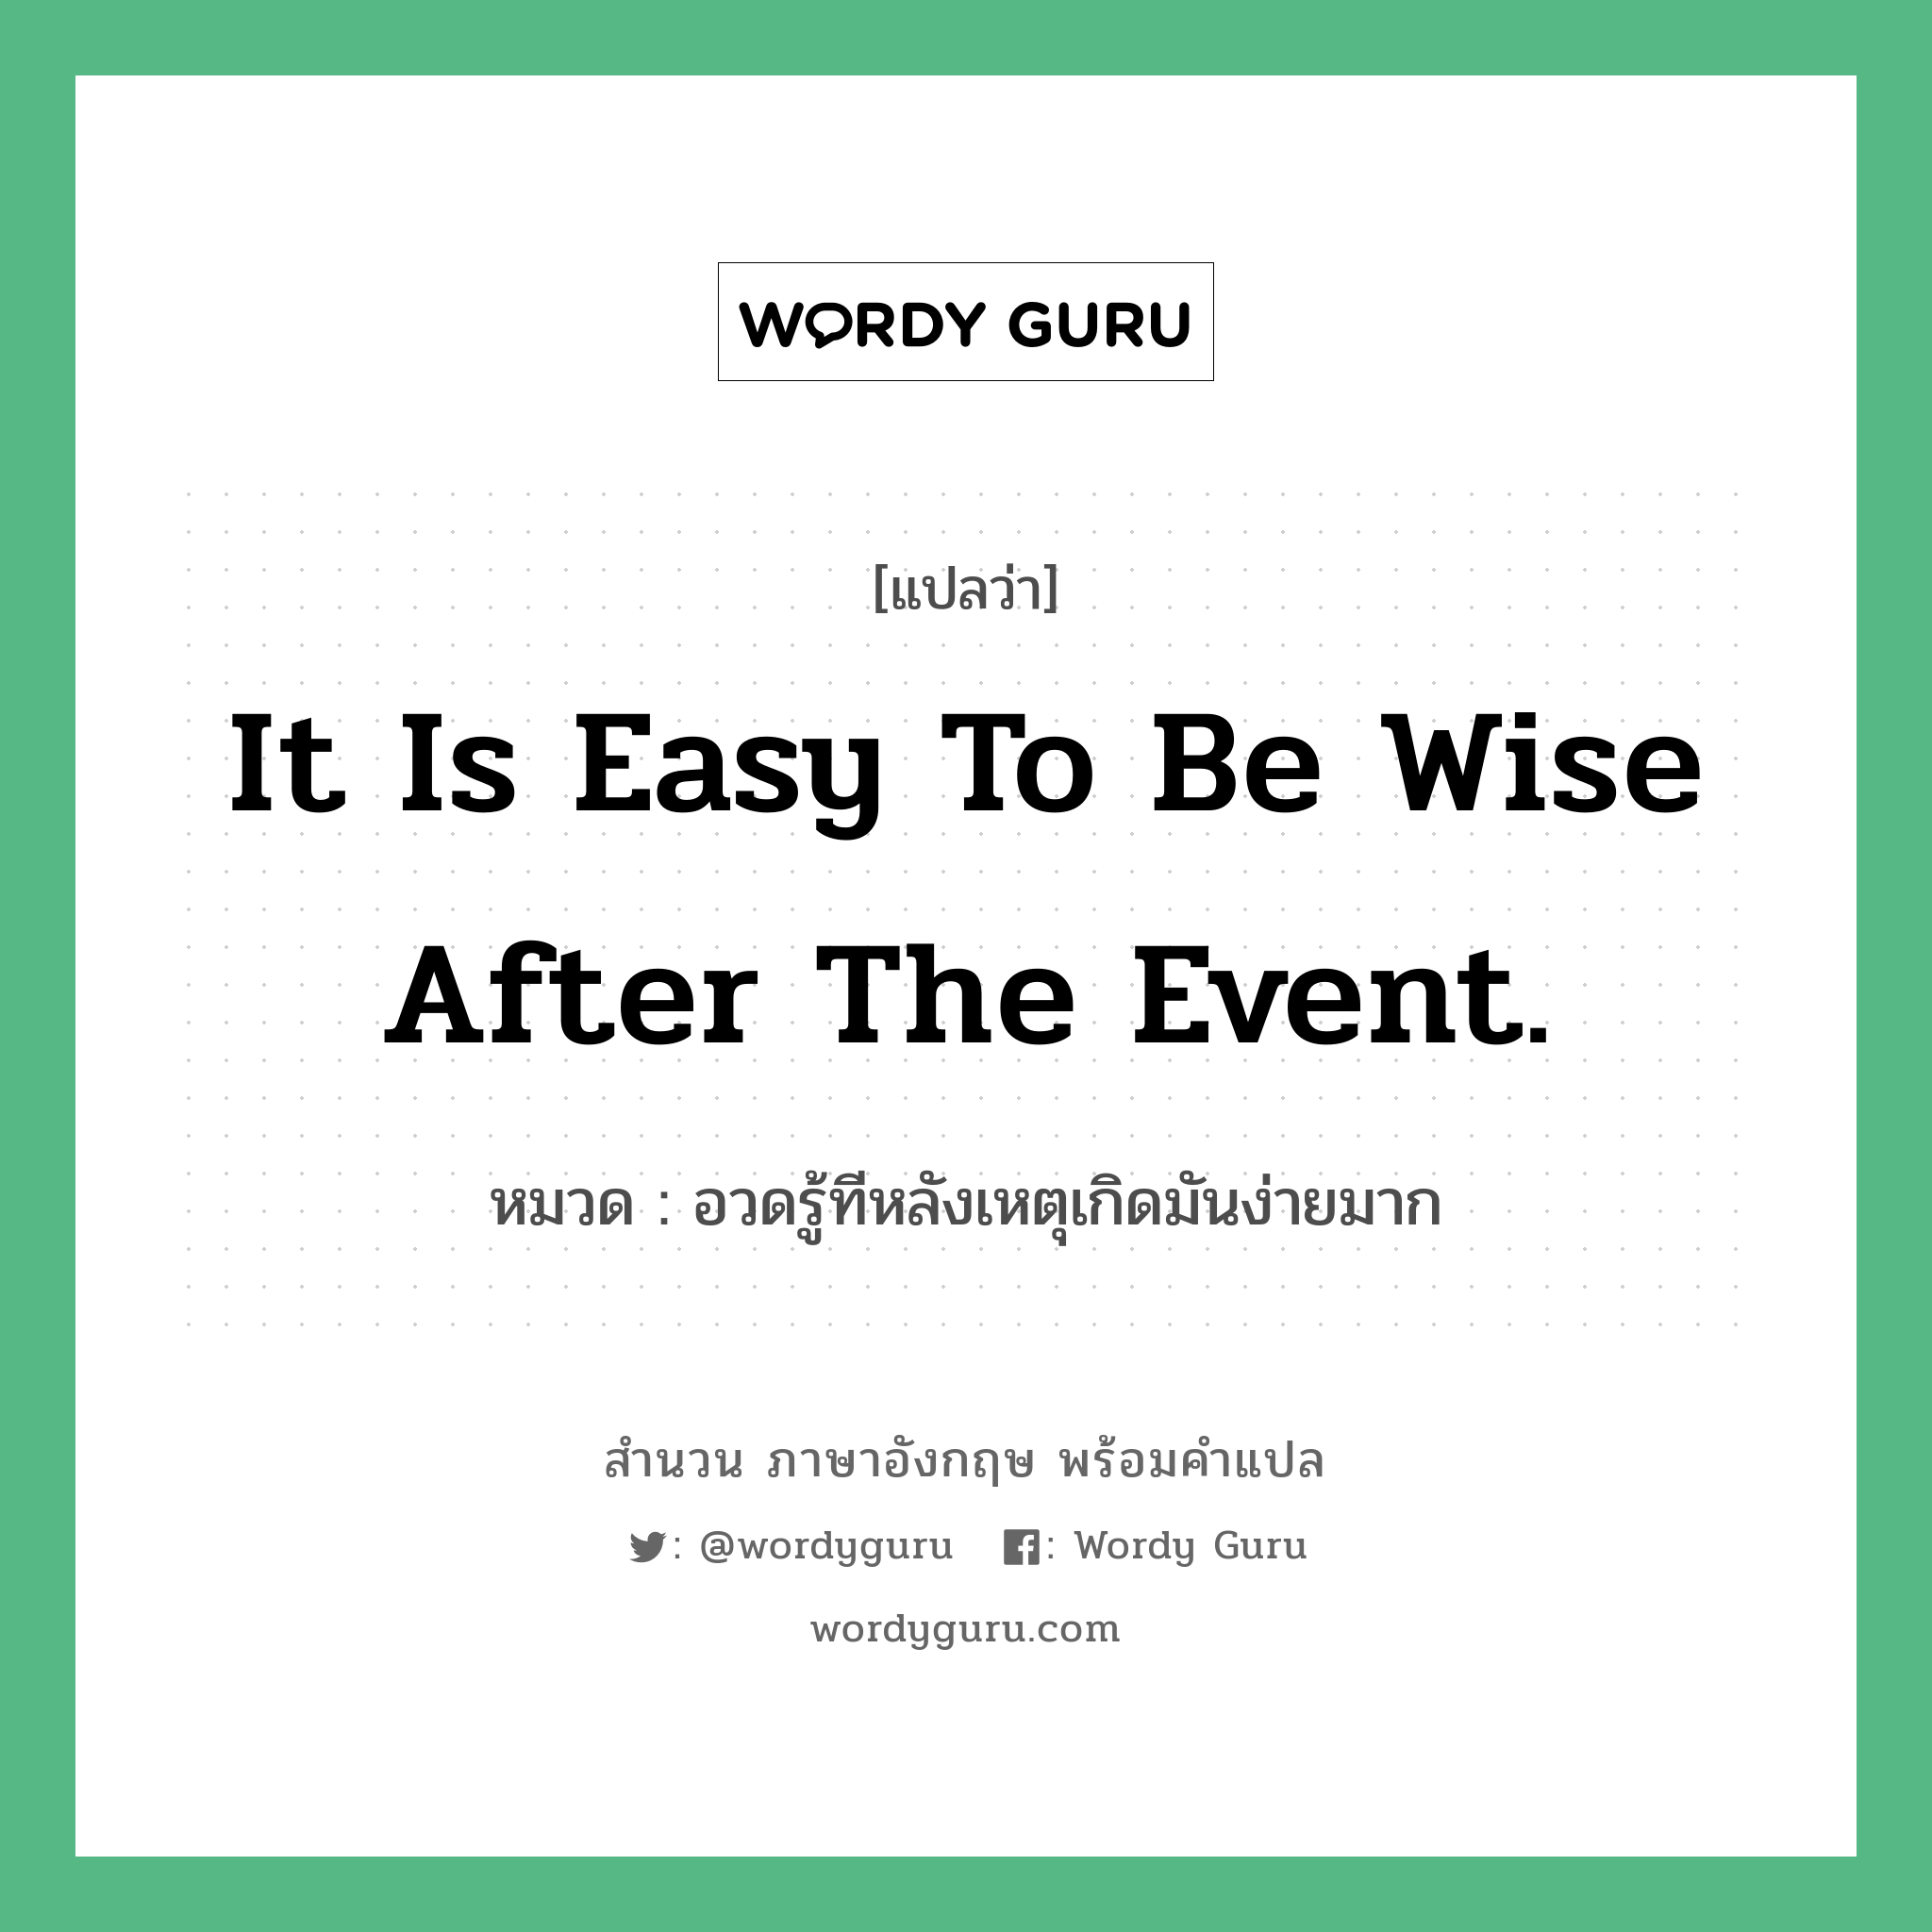 อวดรู้ทีหลังเหตุเกิดมันง่ายมาก ภาษาอังกฤษ?, สำนวนภาษาอังกฤษ อวดรู้ทีหลังเหตุเกิดมันง่ายมาก แปลว่า อวดรู้ทีหลังเหตุเกิดมันง่ายมาก หมวด It is easy to be wise after the event. คำสุภาษิต ภาษาอังกฤษ หมวด คำสุภาษิต ภาษาอังกฤษ